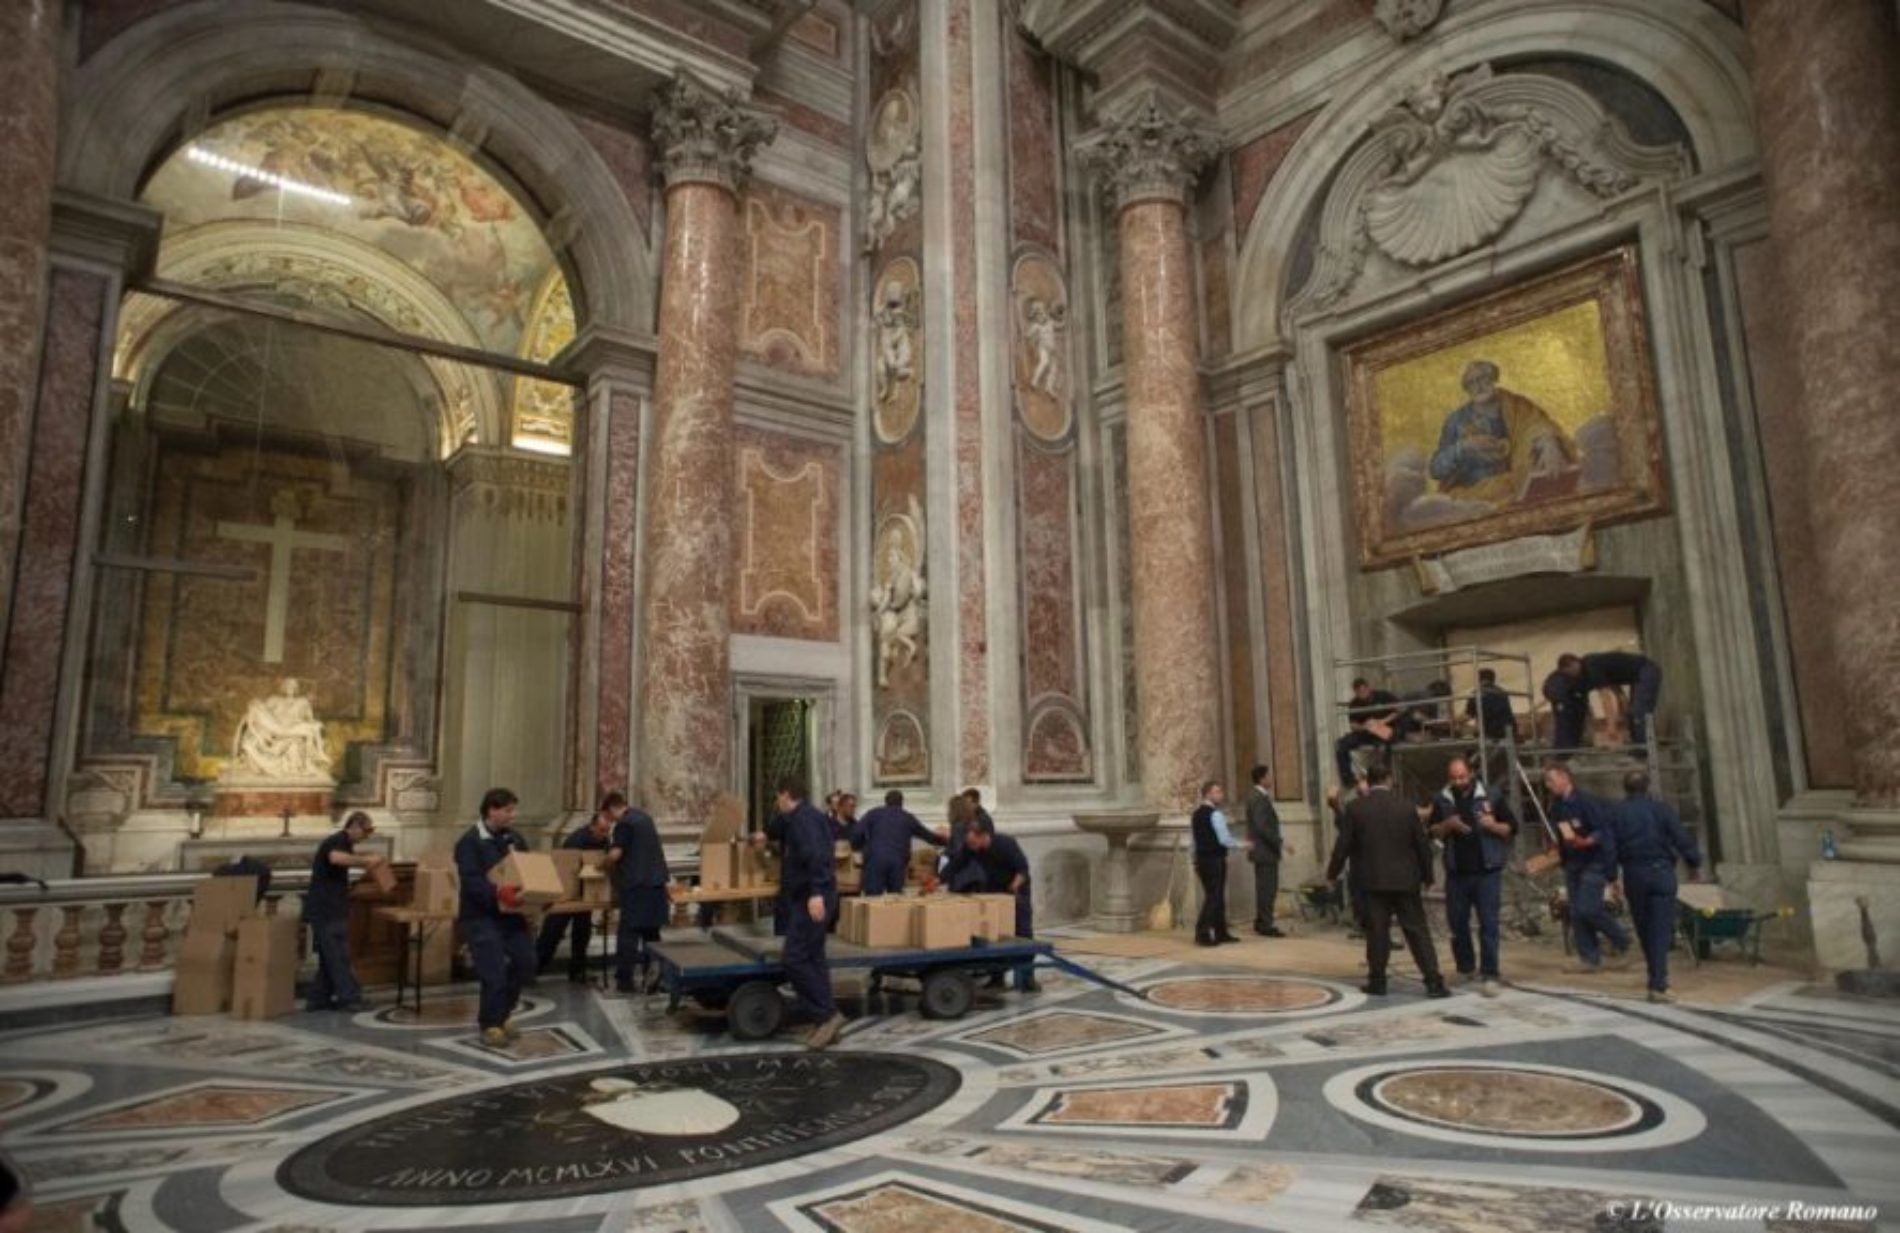 In vista dell’imminente GIUBILEO tolti i primi sigilli alla Porta Santa della basilica di San Pietro